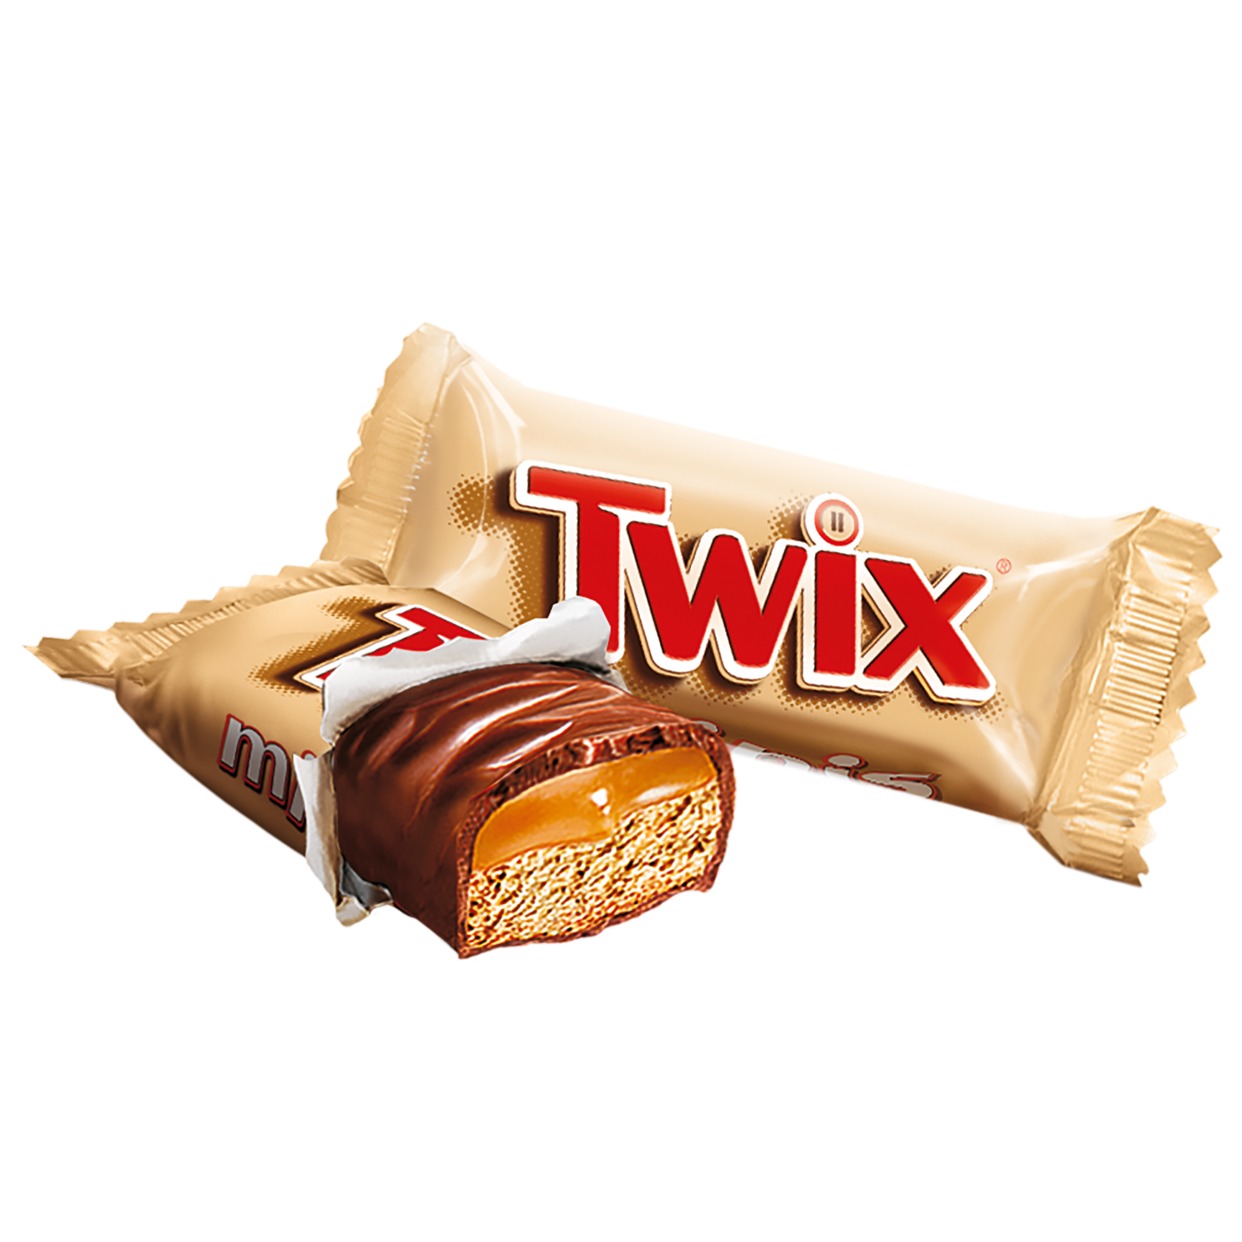 Печенье Twix minis песочное с карамелью 100 г по акции в Пятерочке